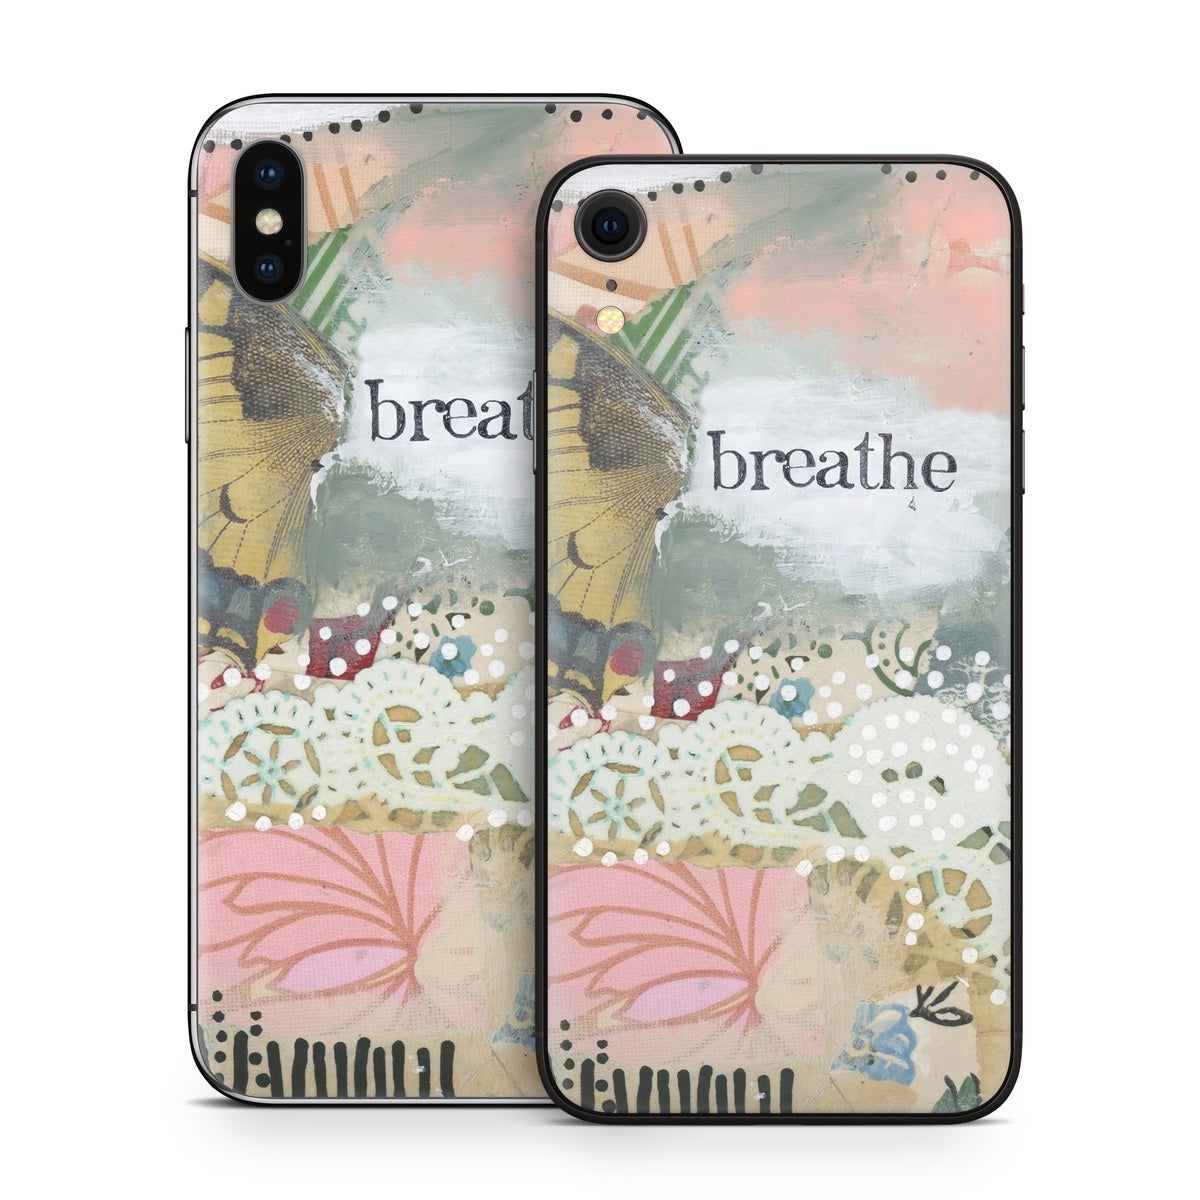 Breathe - Apple iPhone X Skin